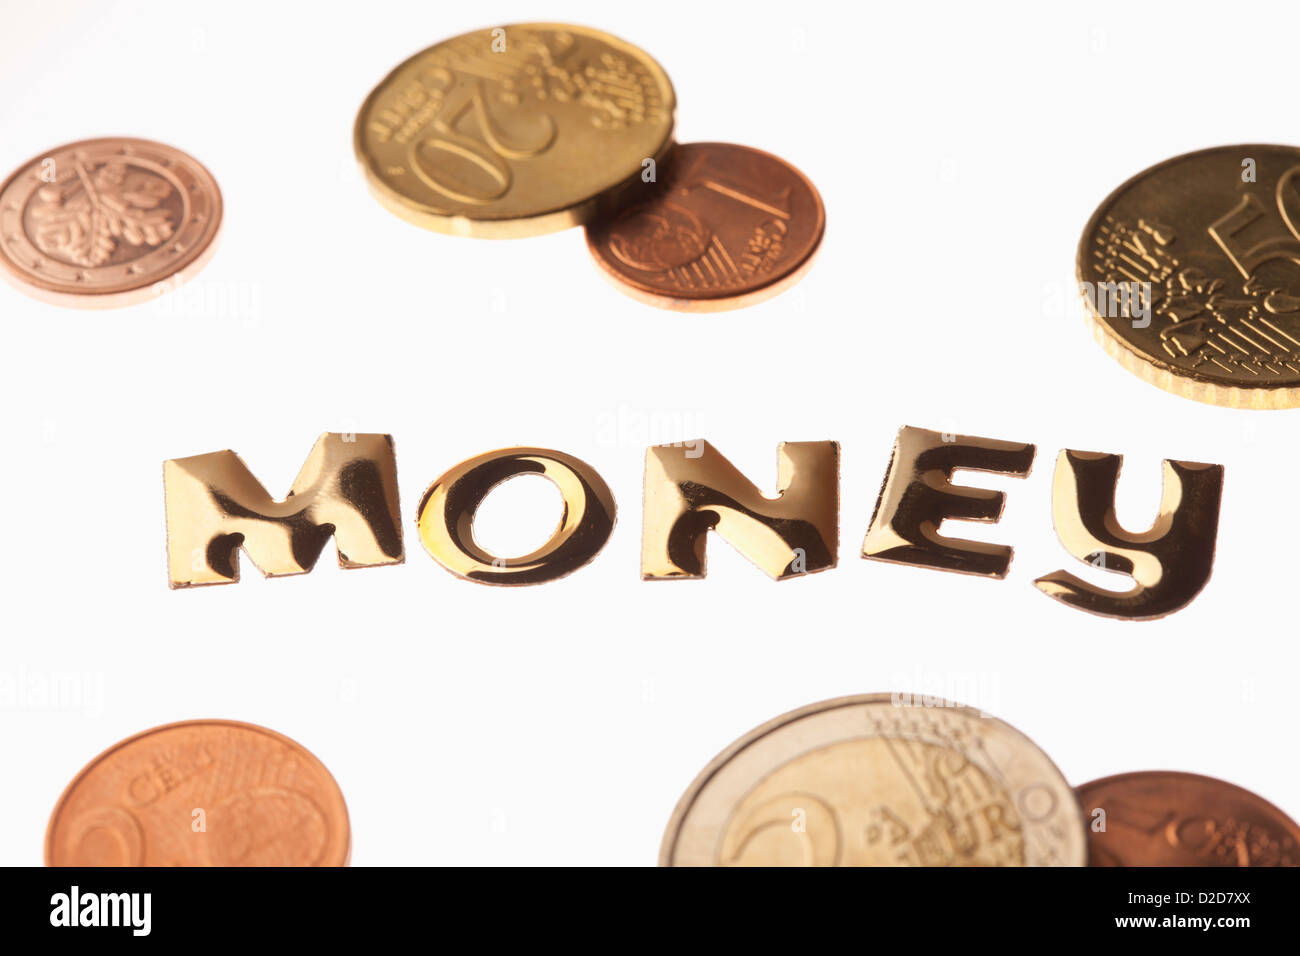 Das Wort "Geld" in goldenem Schriftzug umgeben von Euro-Münzen Stockfoto